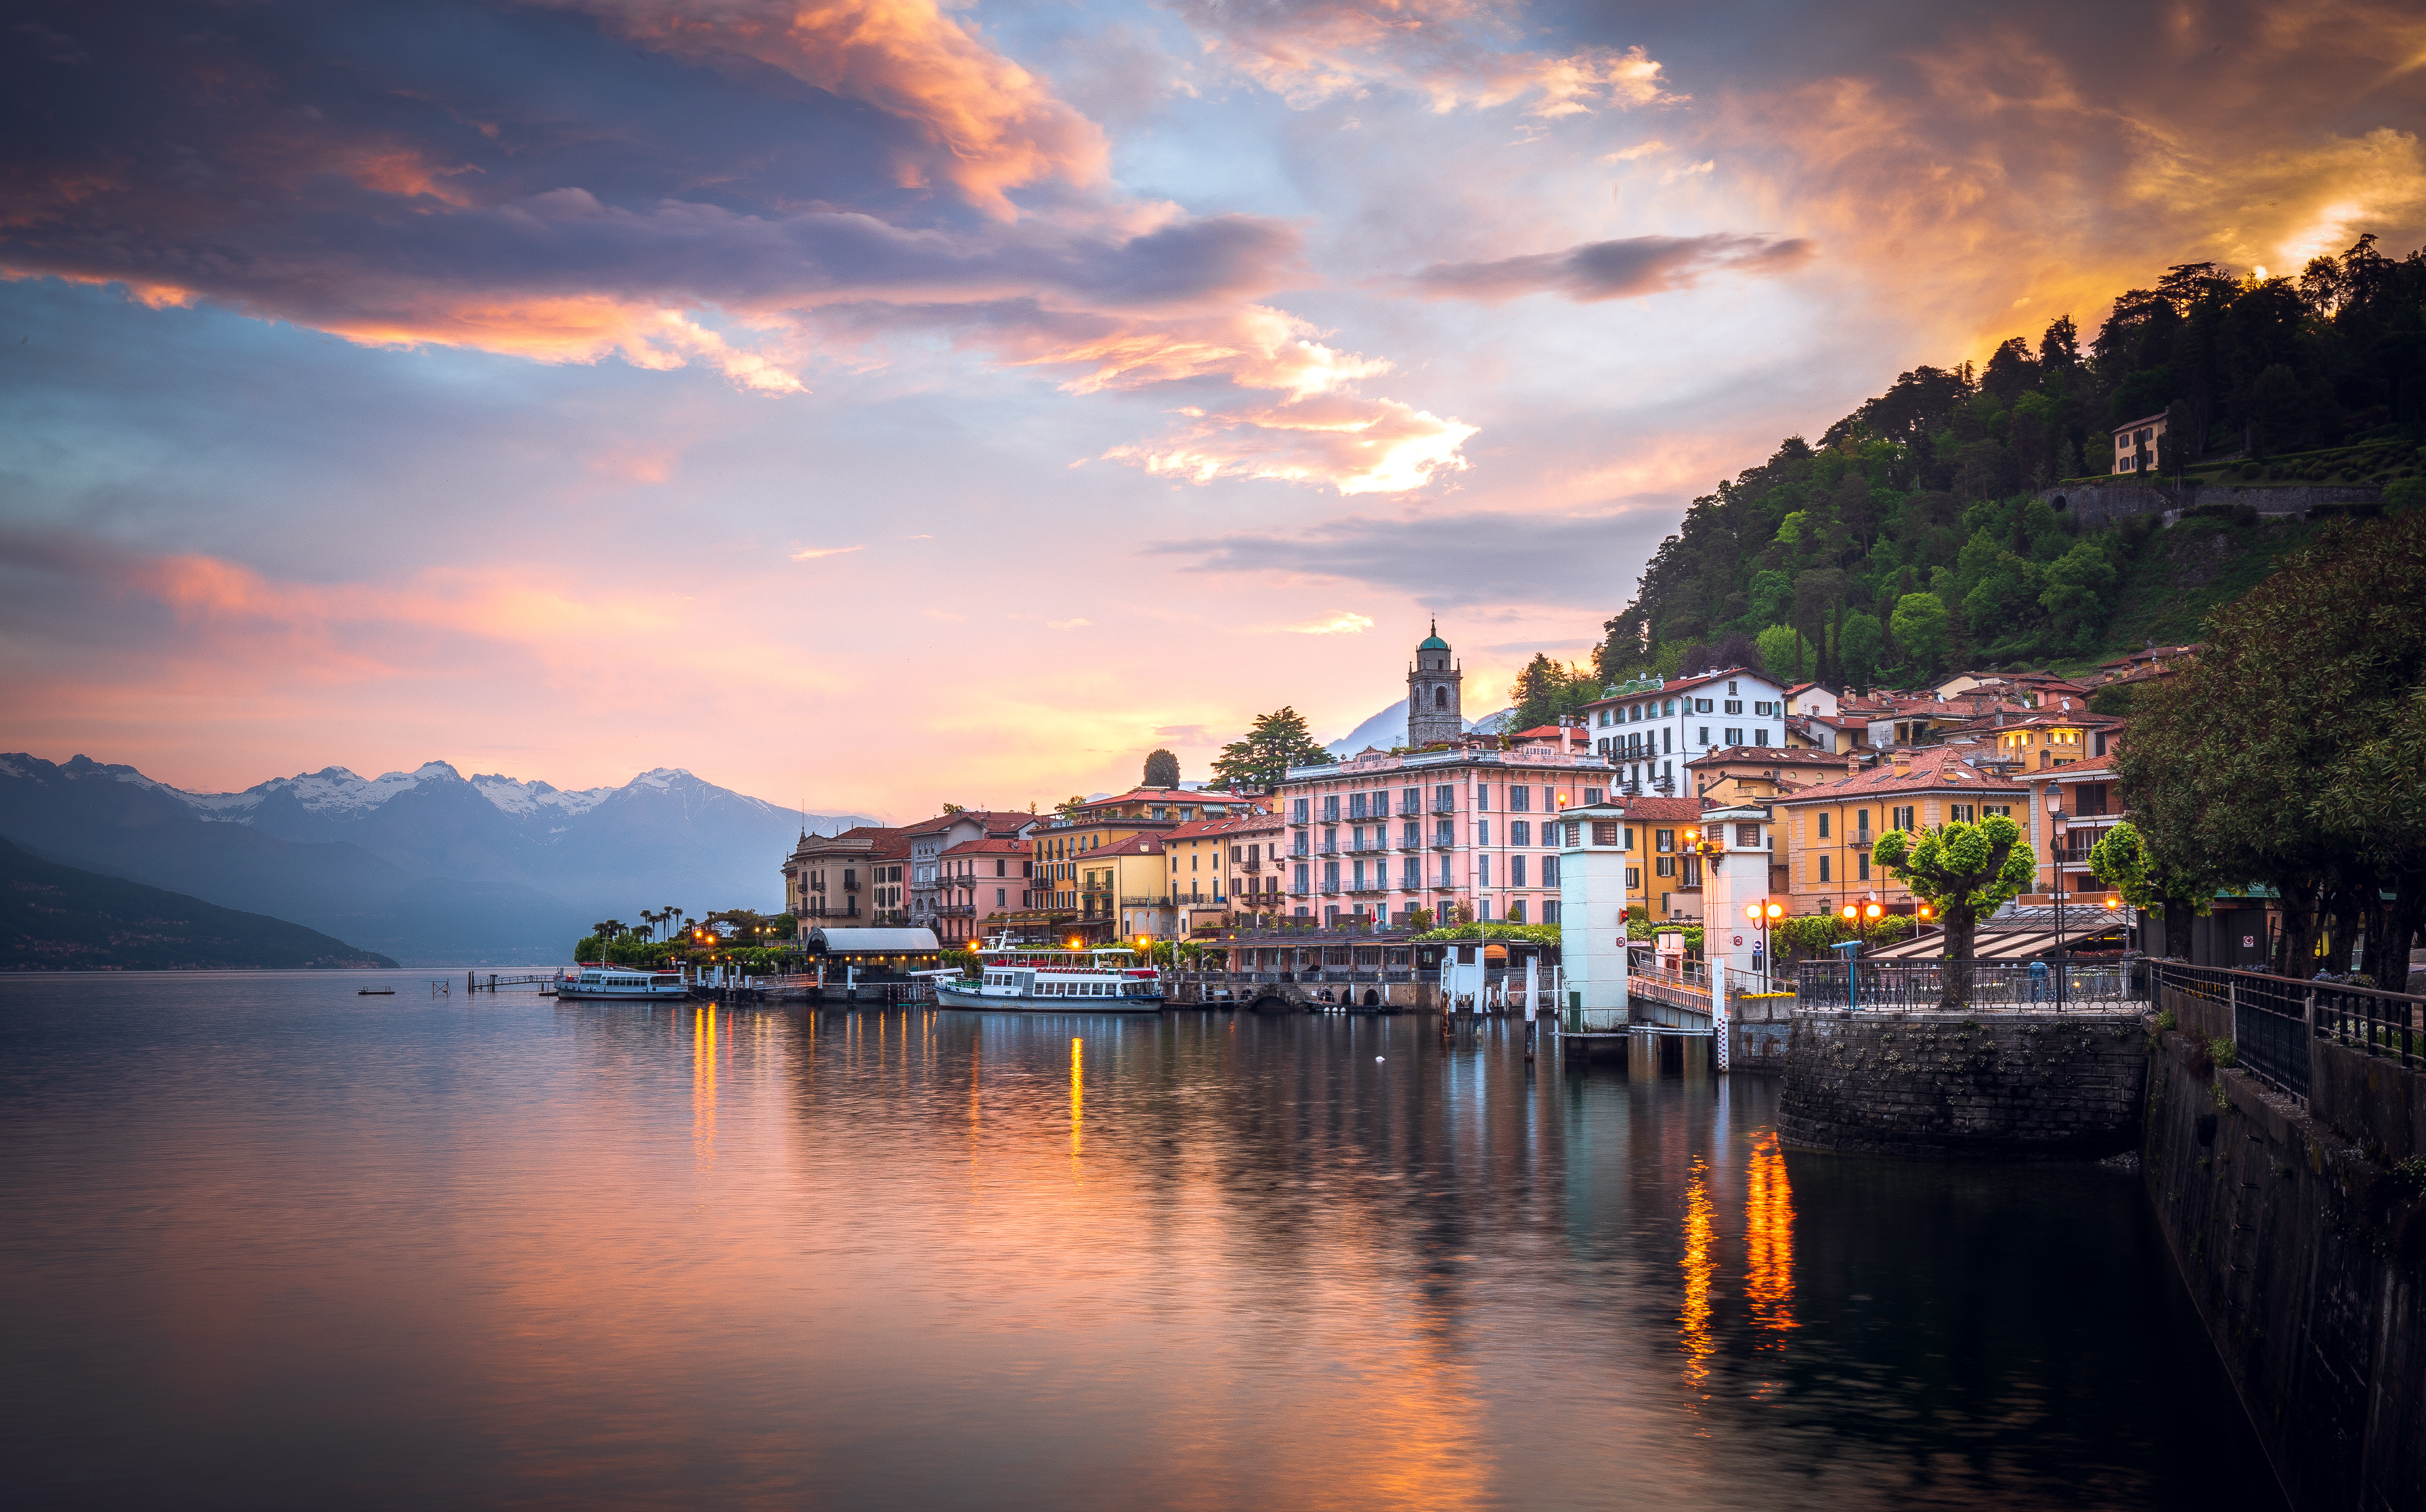 Colorful sunrise reflecting on Lake Como. Bellagio, Italy